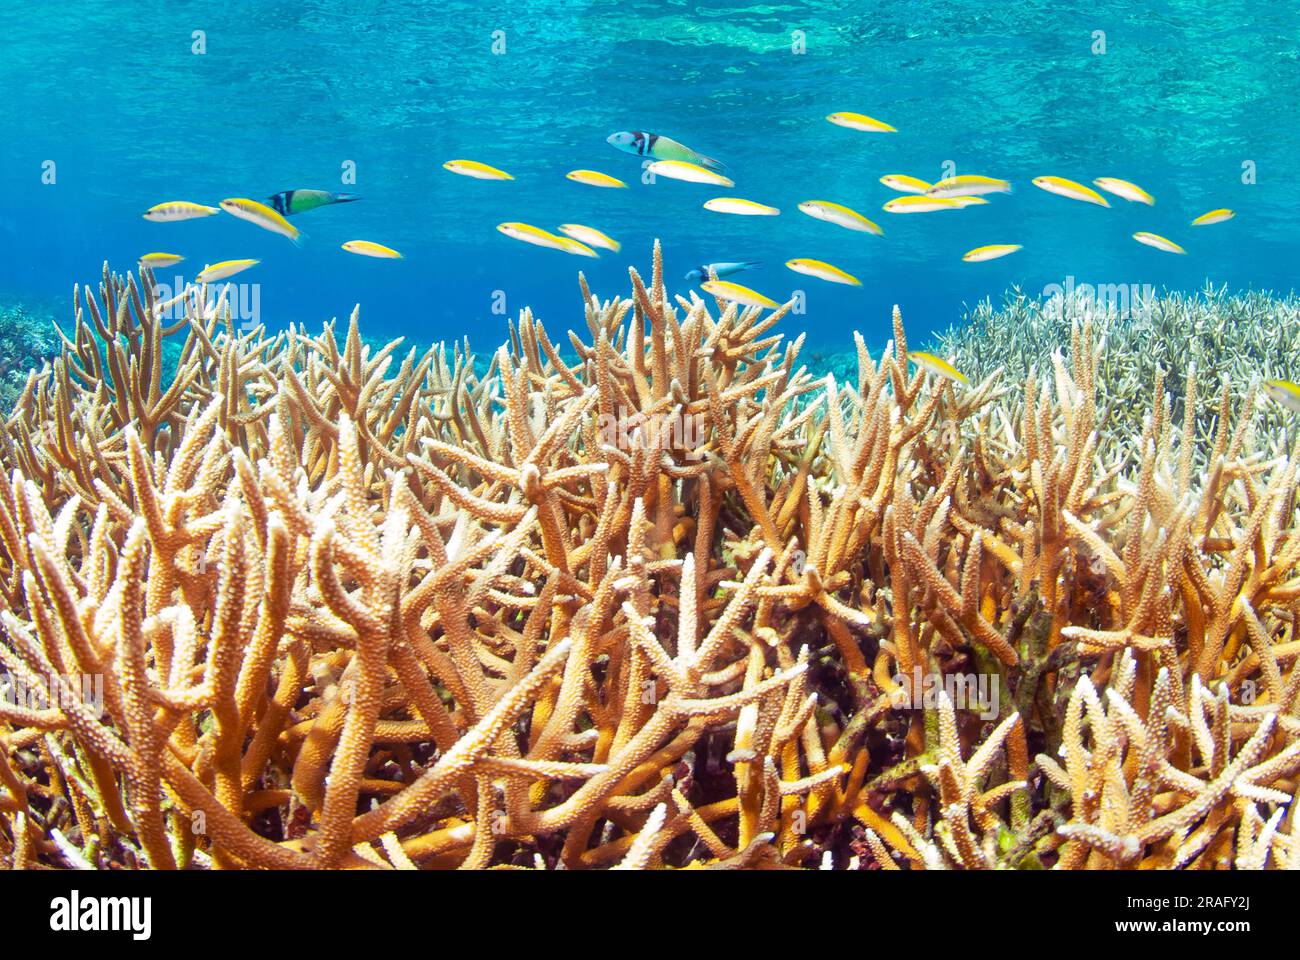 Poissons nageant sur le corail Staghorn (Acropora cervicornis) Banque D'Images